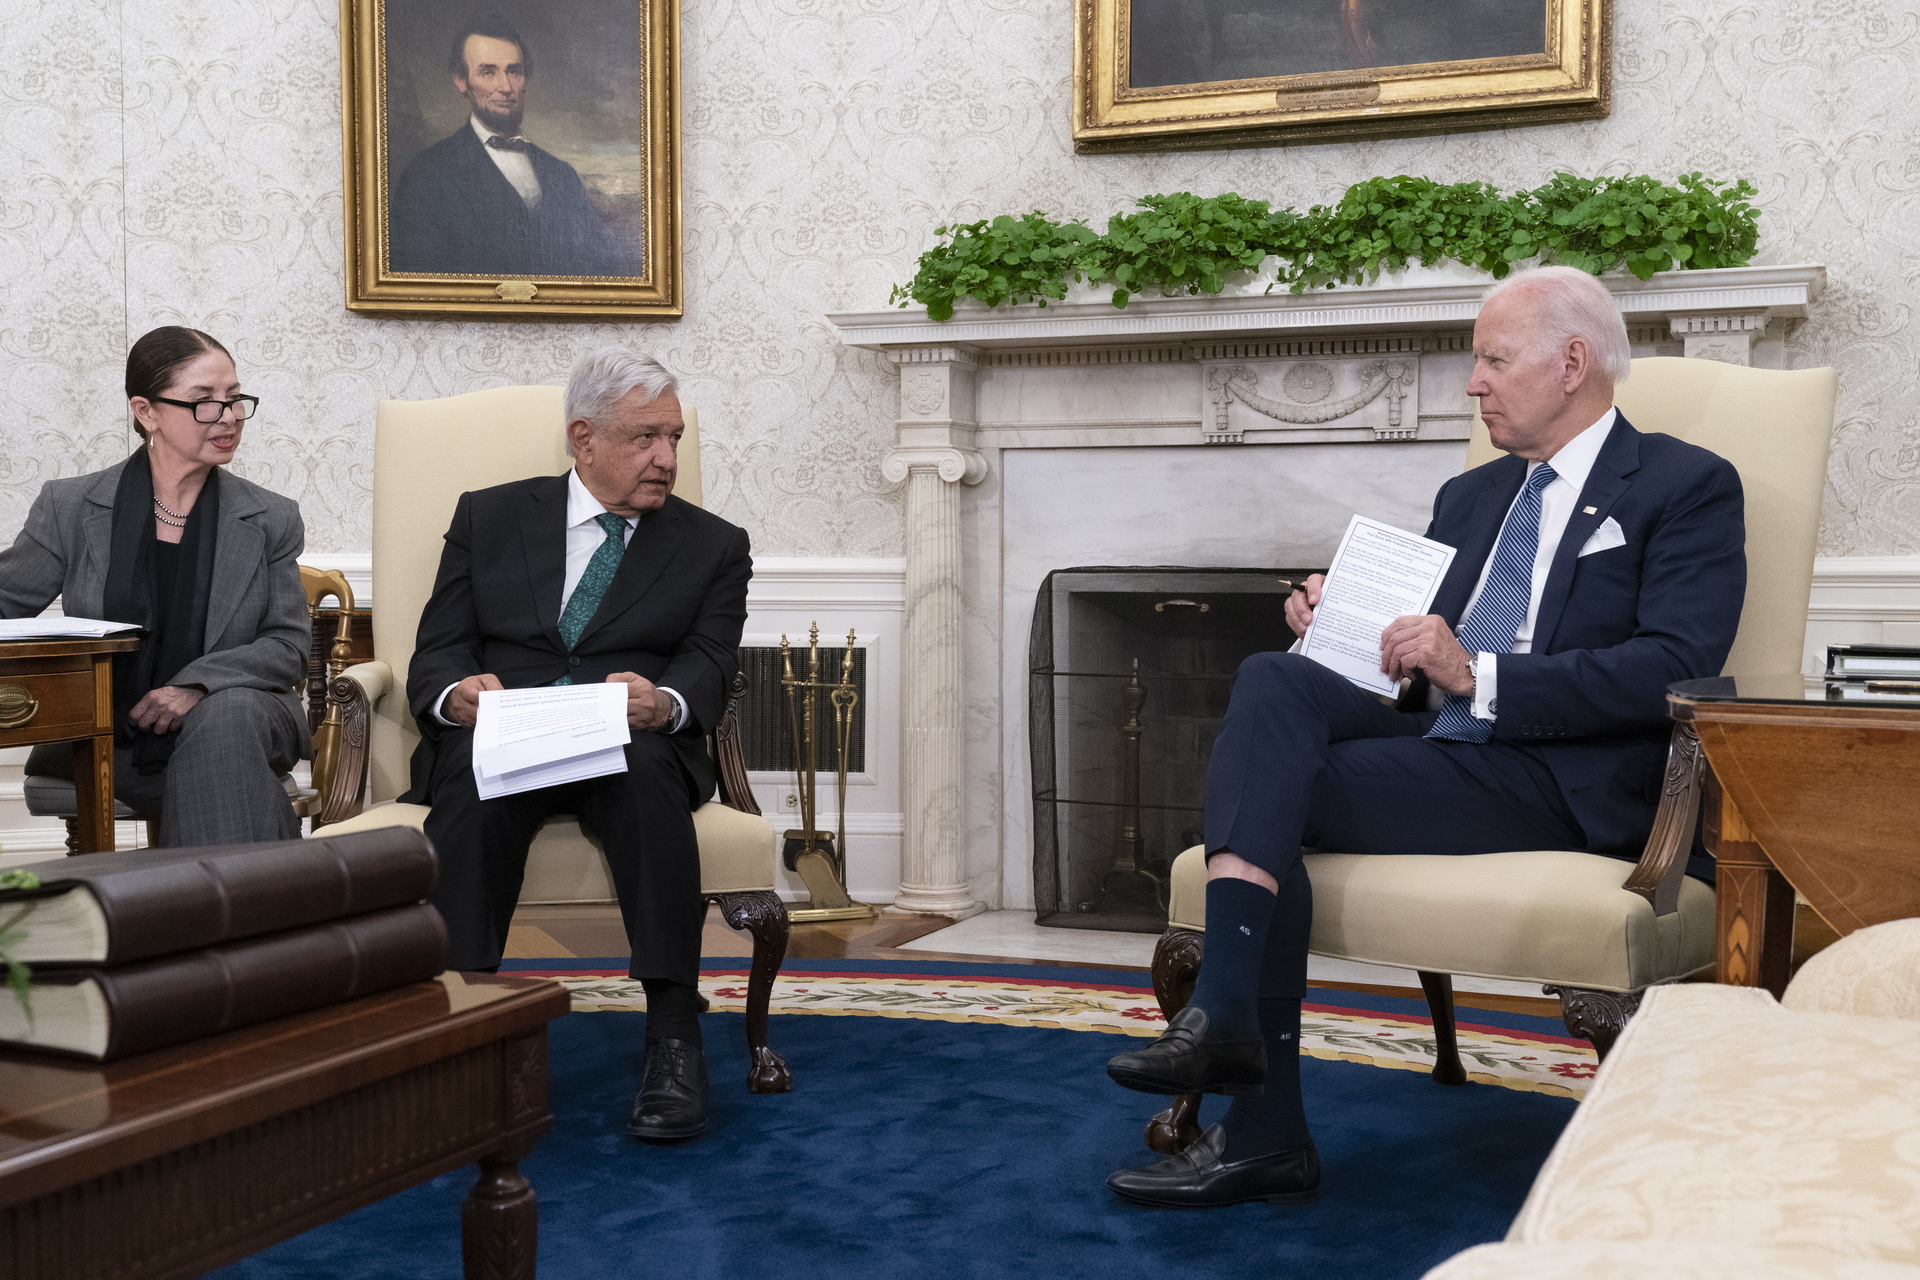 Encuentro con Biden fue benéfico para los pueblos de EUA y México, asegura AMLO